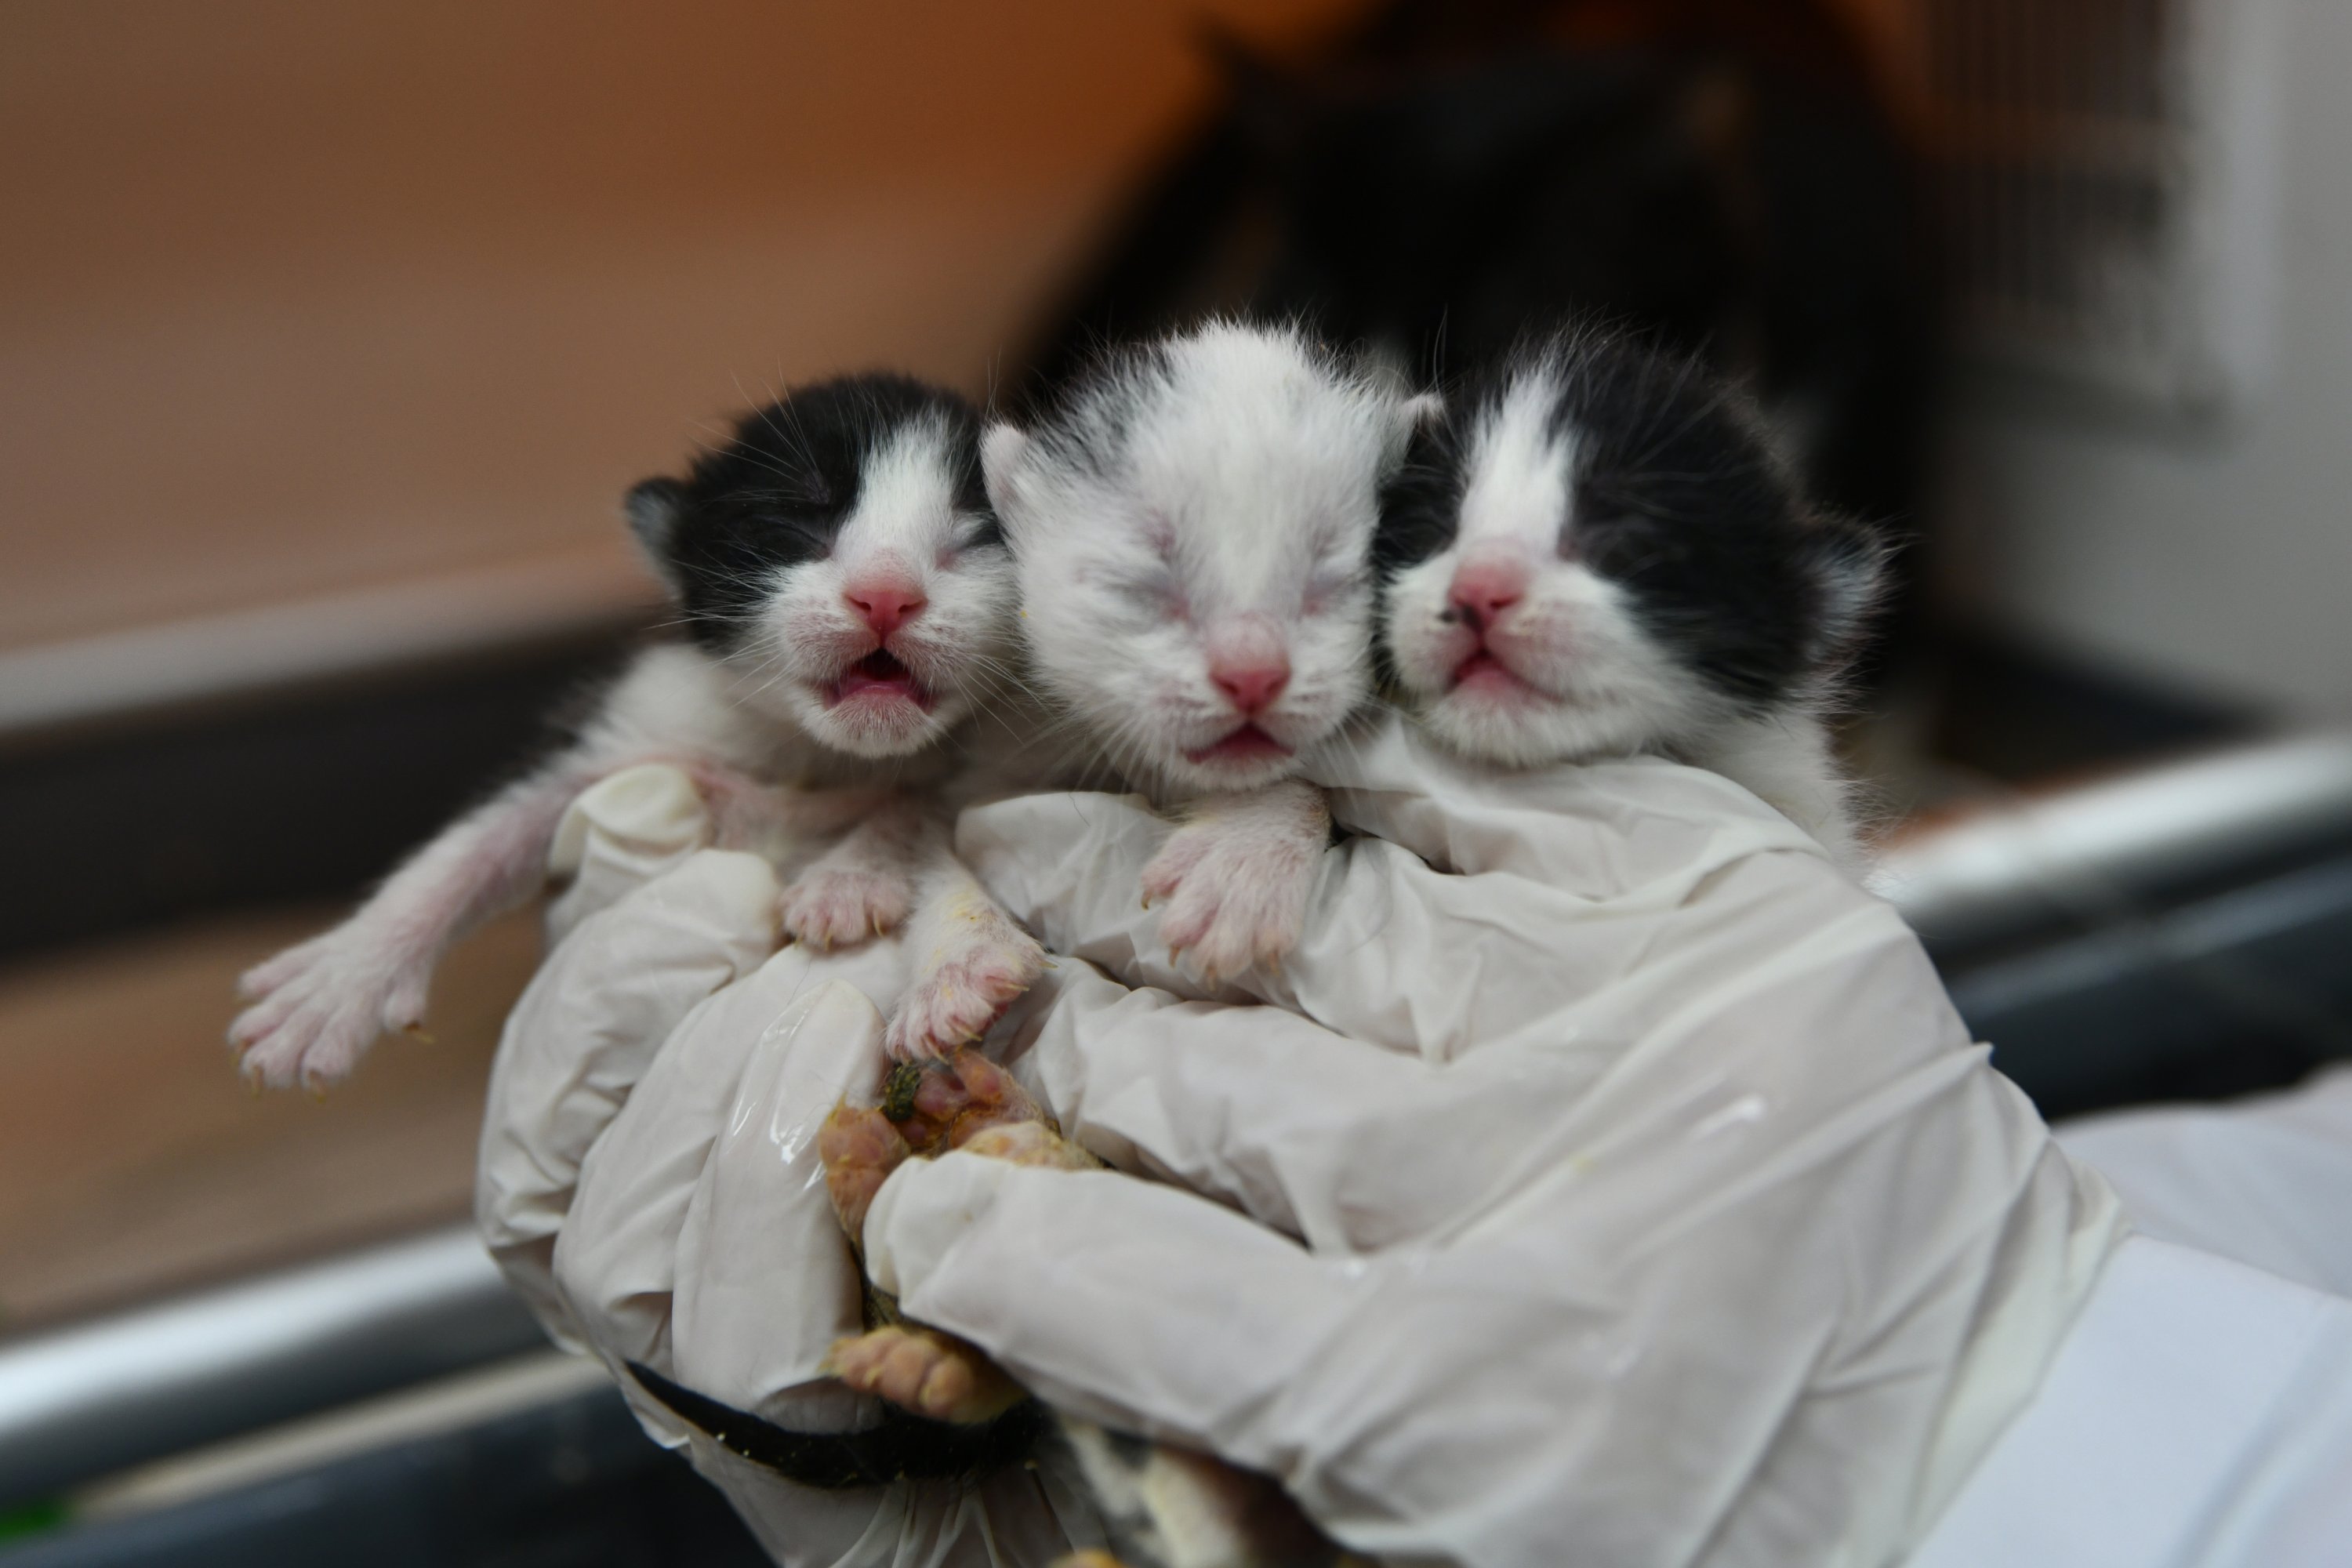 Kucing yang diselamatkan dari puing-puing itu melahirkan tiga anak melalui operasi caesar yang dilakukan di Kebun Binatang Gaziantep, Gaziantep, Türkiye, 23 Februari 2023. (Foto AA)